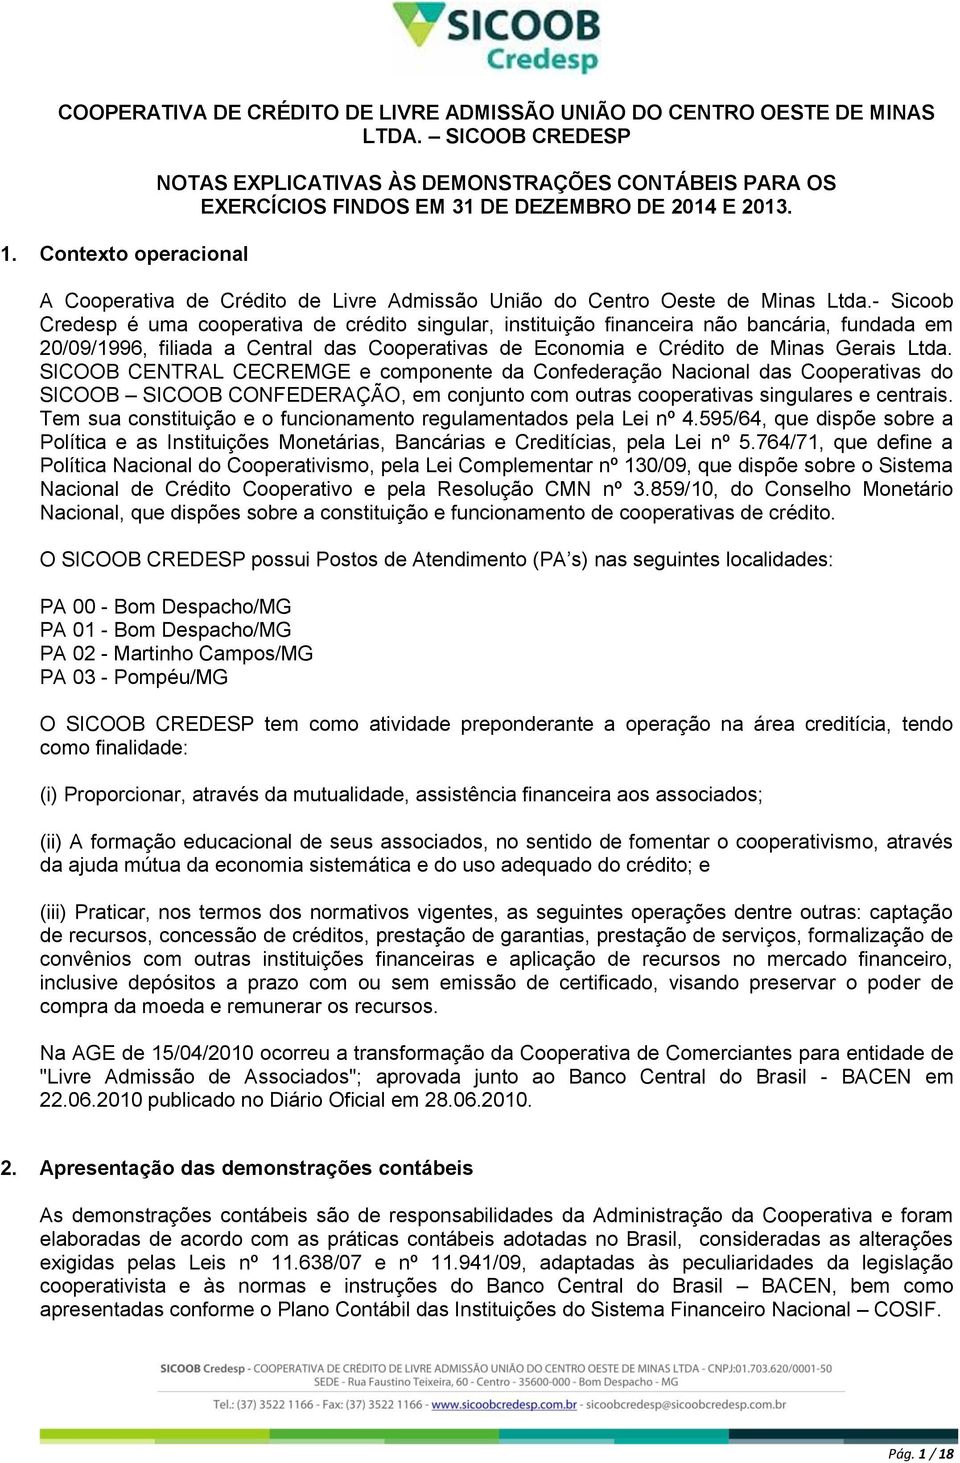 A Cooperativa de Crédito de Livre Admissão União do Centro Oeste de Minas Ltda.